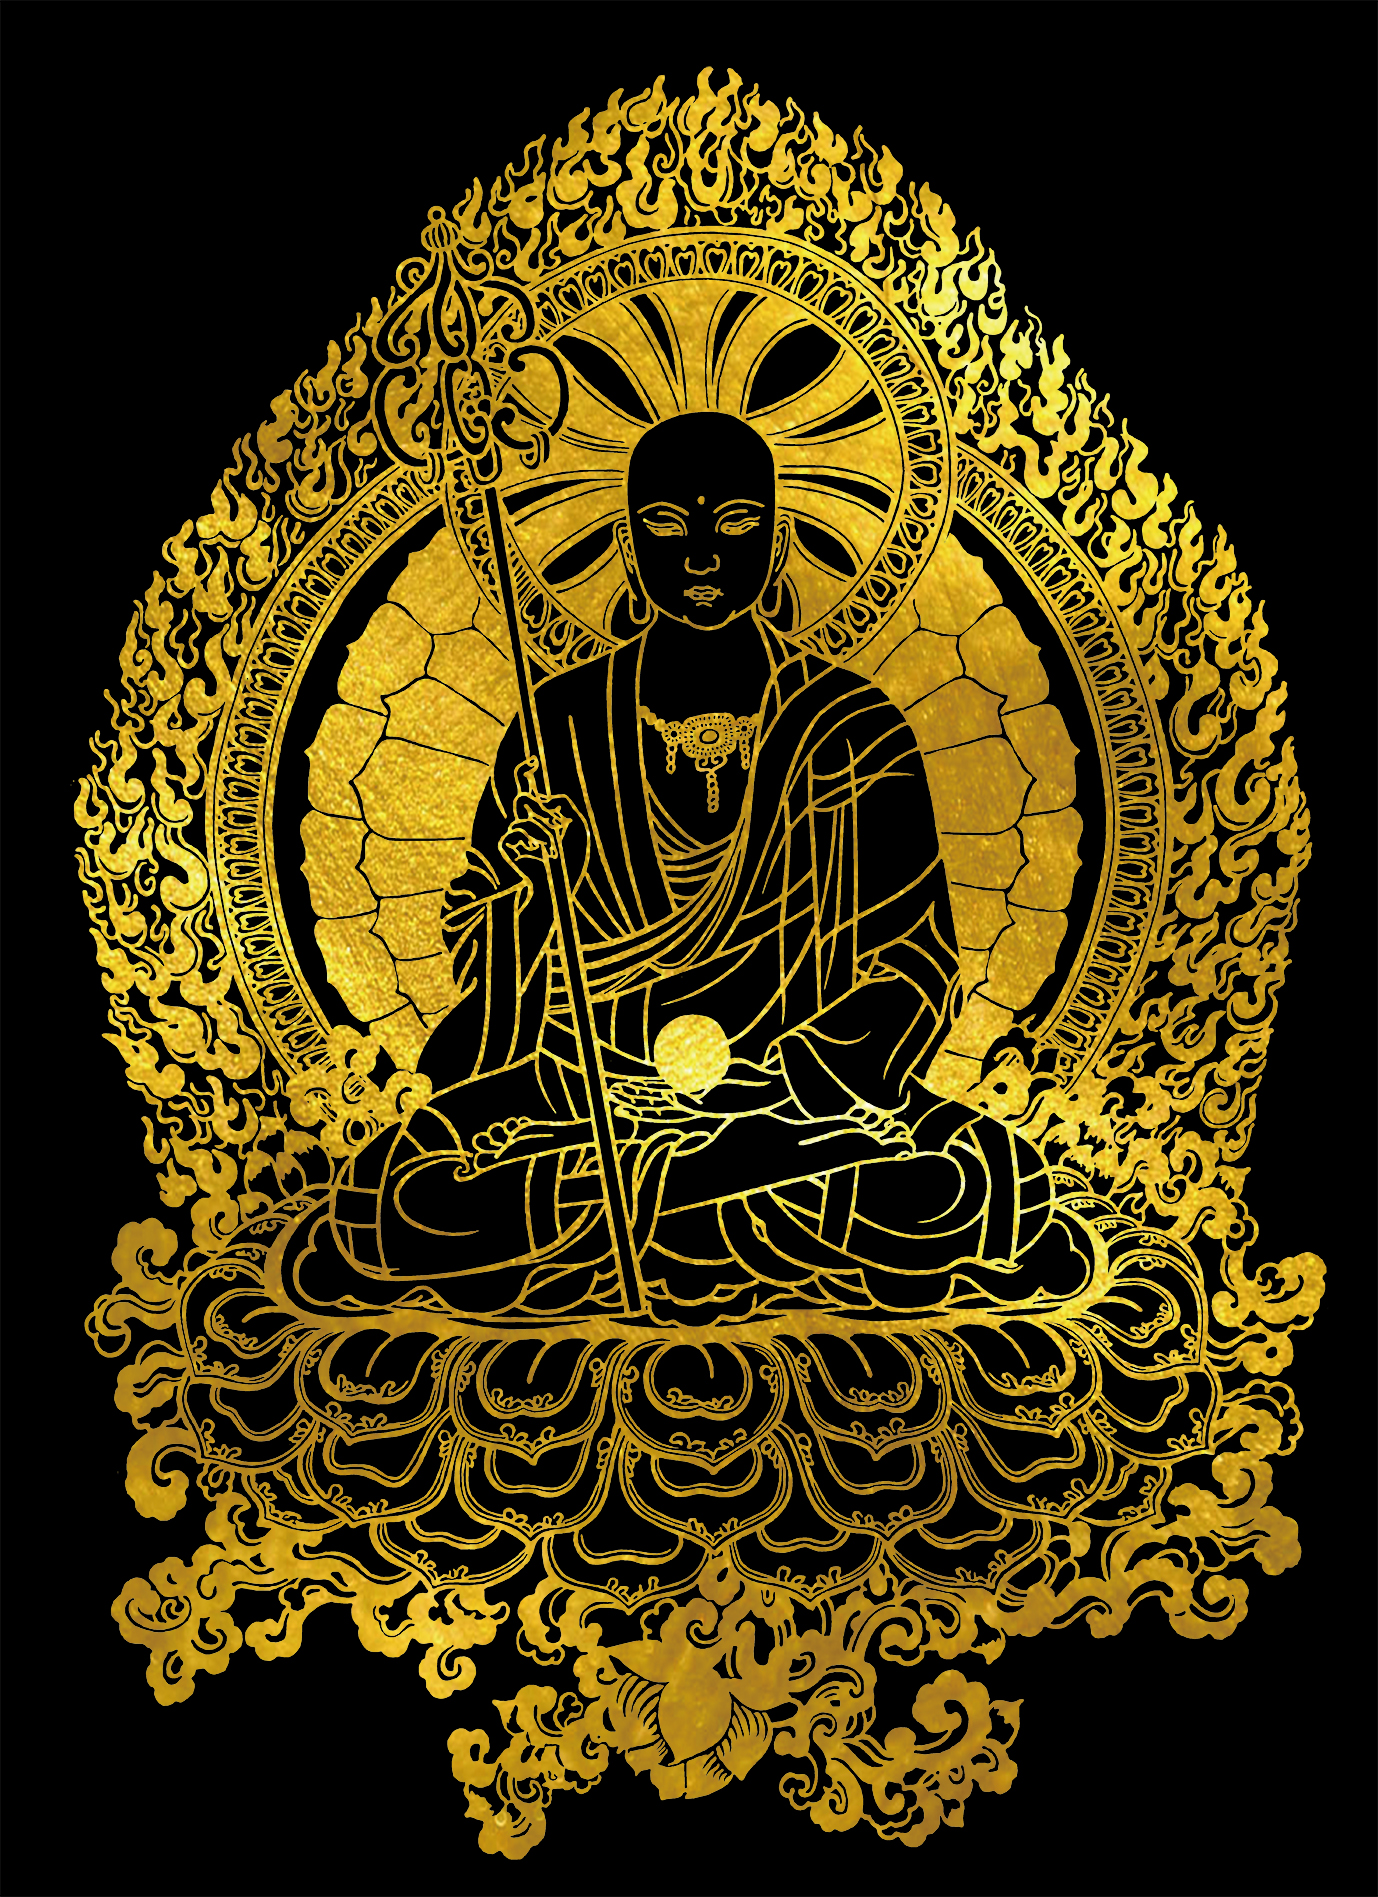 地藏王菩萨描金唐卡|静心减压|佛像涂色线稿|DIY手绘填色装饰画